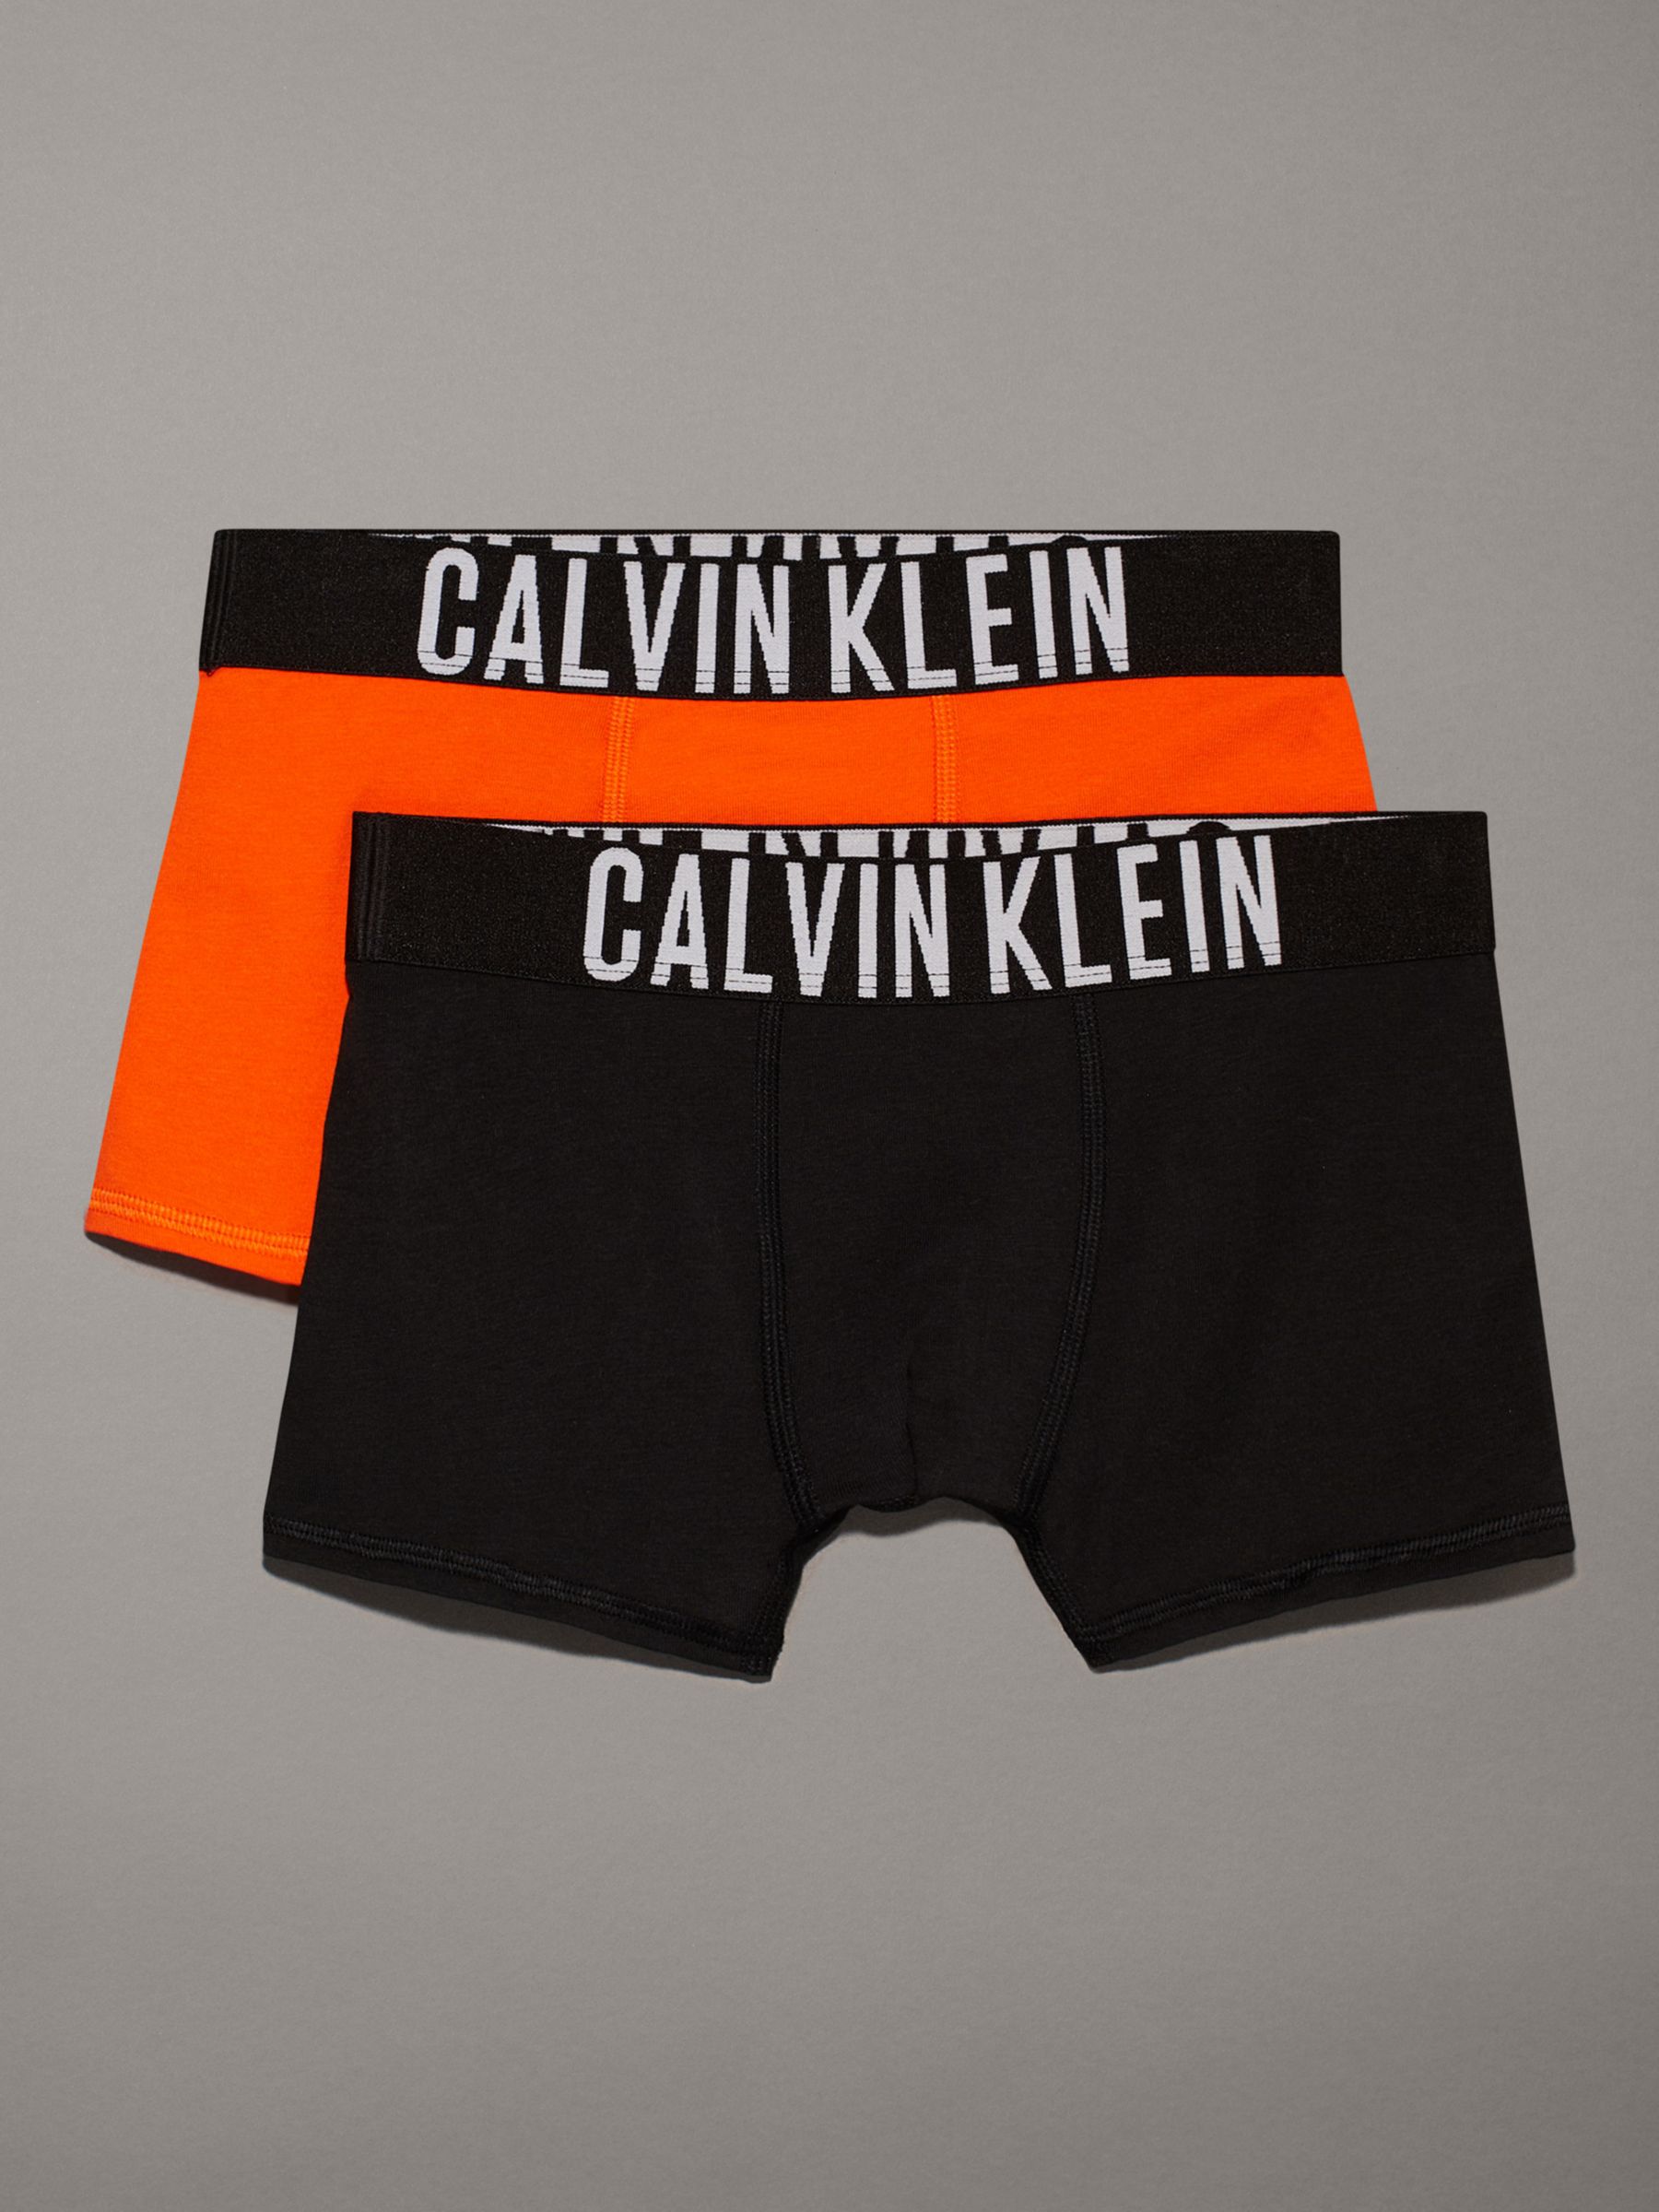 Calvin Klein Kids' Logo Solid Trunks, Pack of 2, Danger Orange/Black, 10-12 years